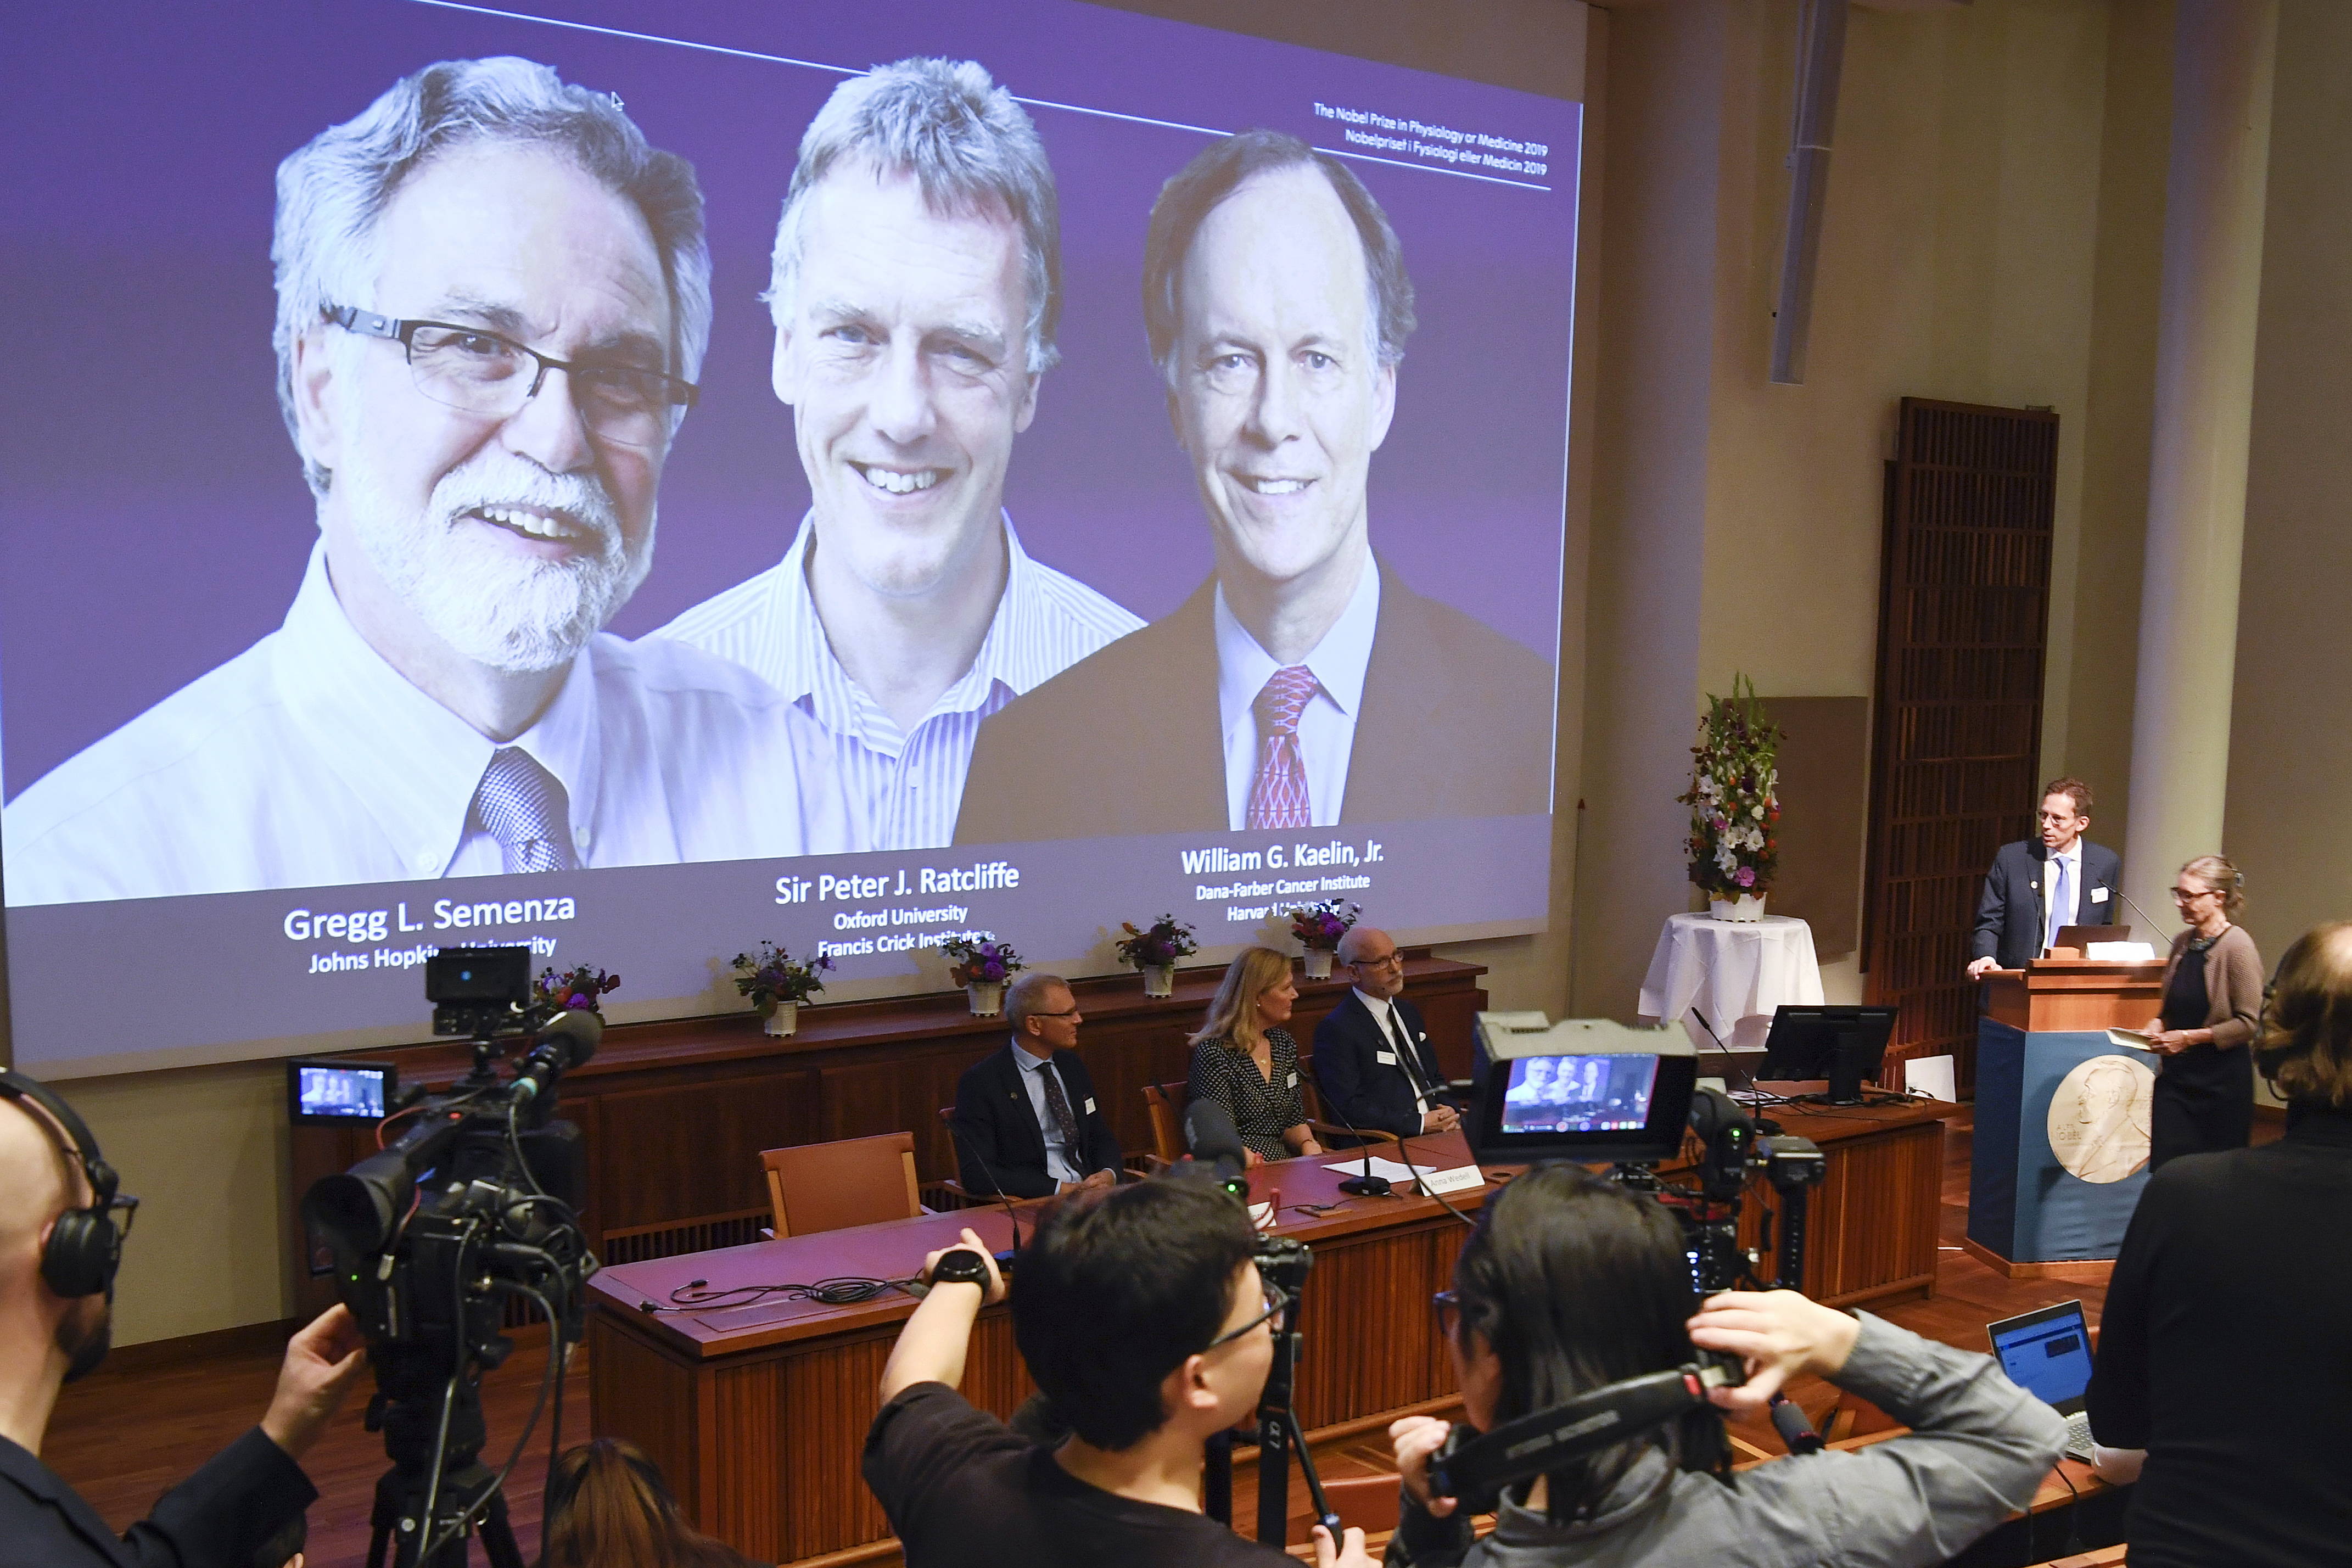 Laureaci tegorocznej Nagrody Nobla w dziedzinie medycyny i fizjologii: Gregg L. Semenza, Sir Peter J. Ratcliffe i William G. Kaelin